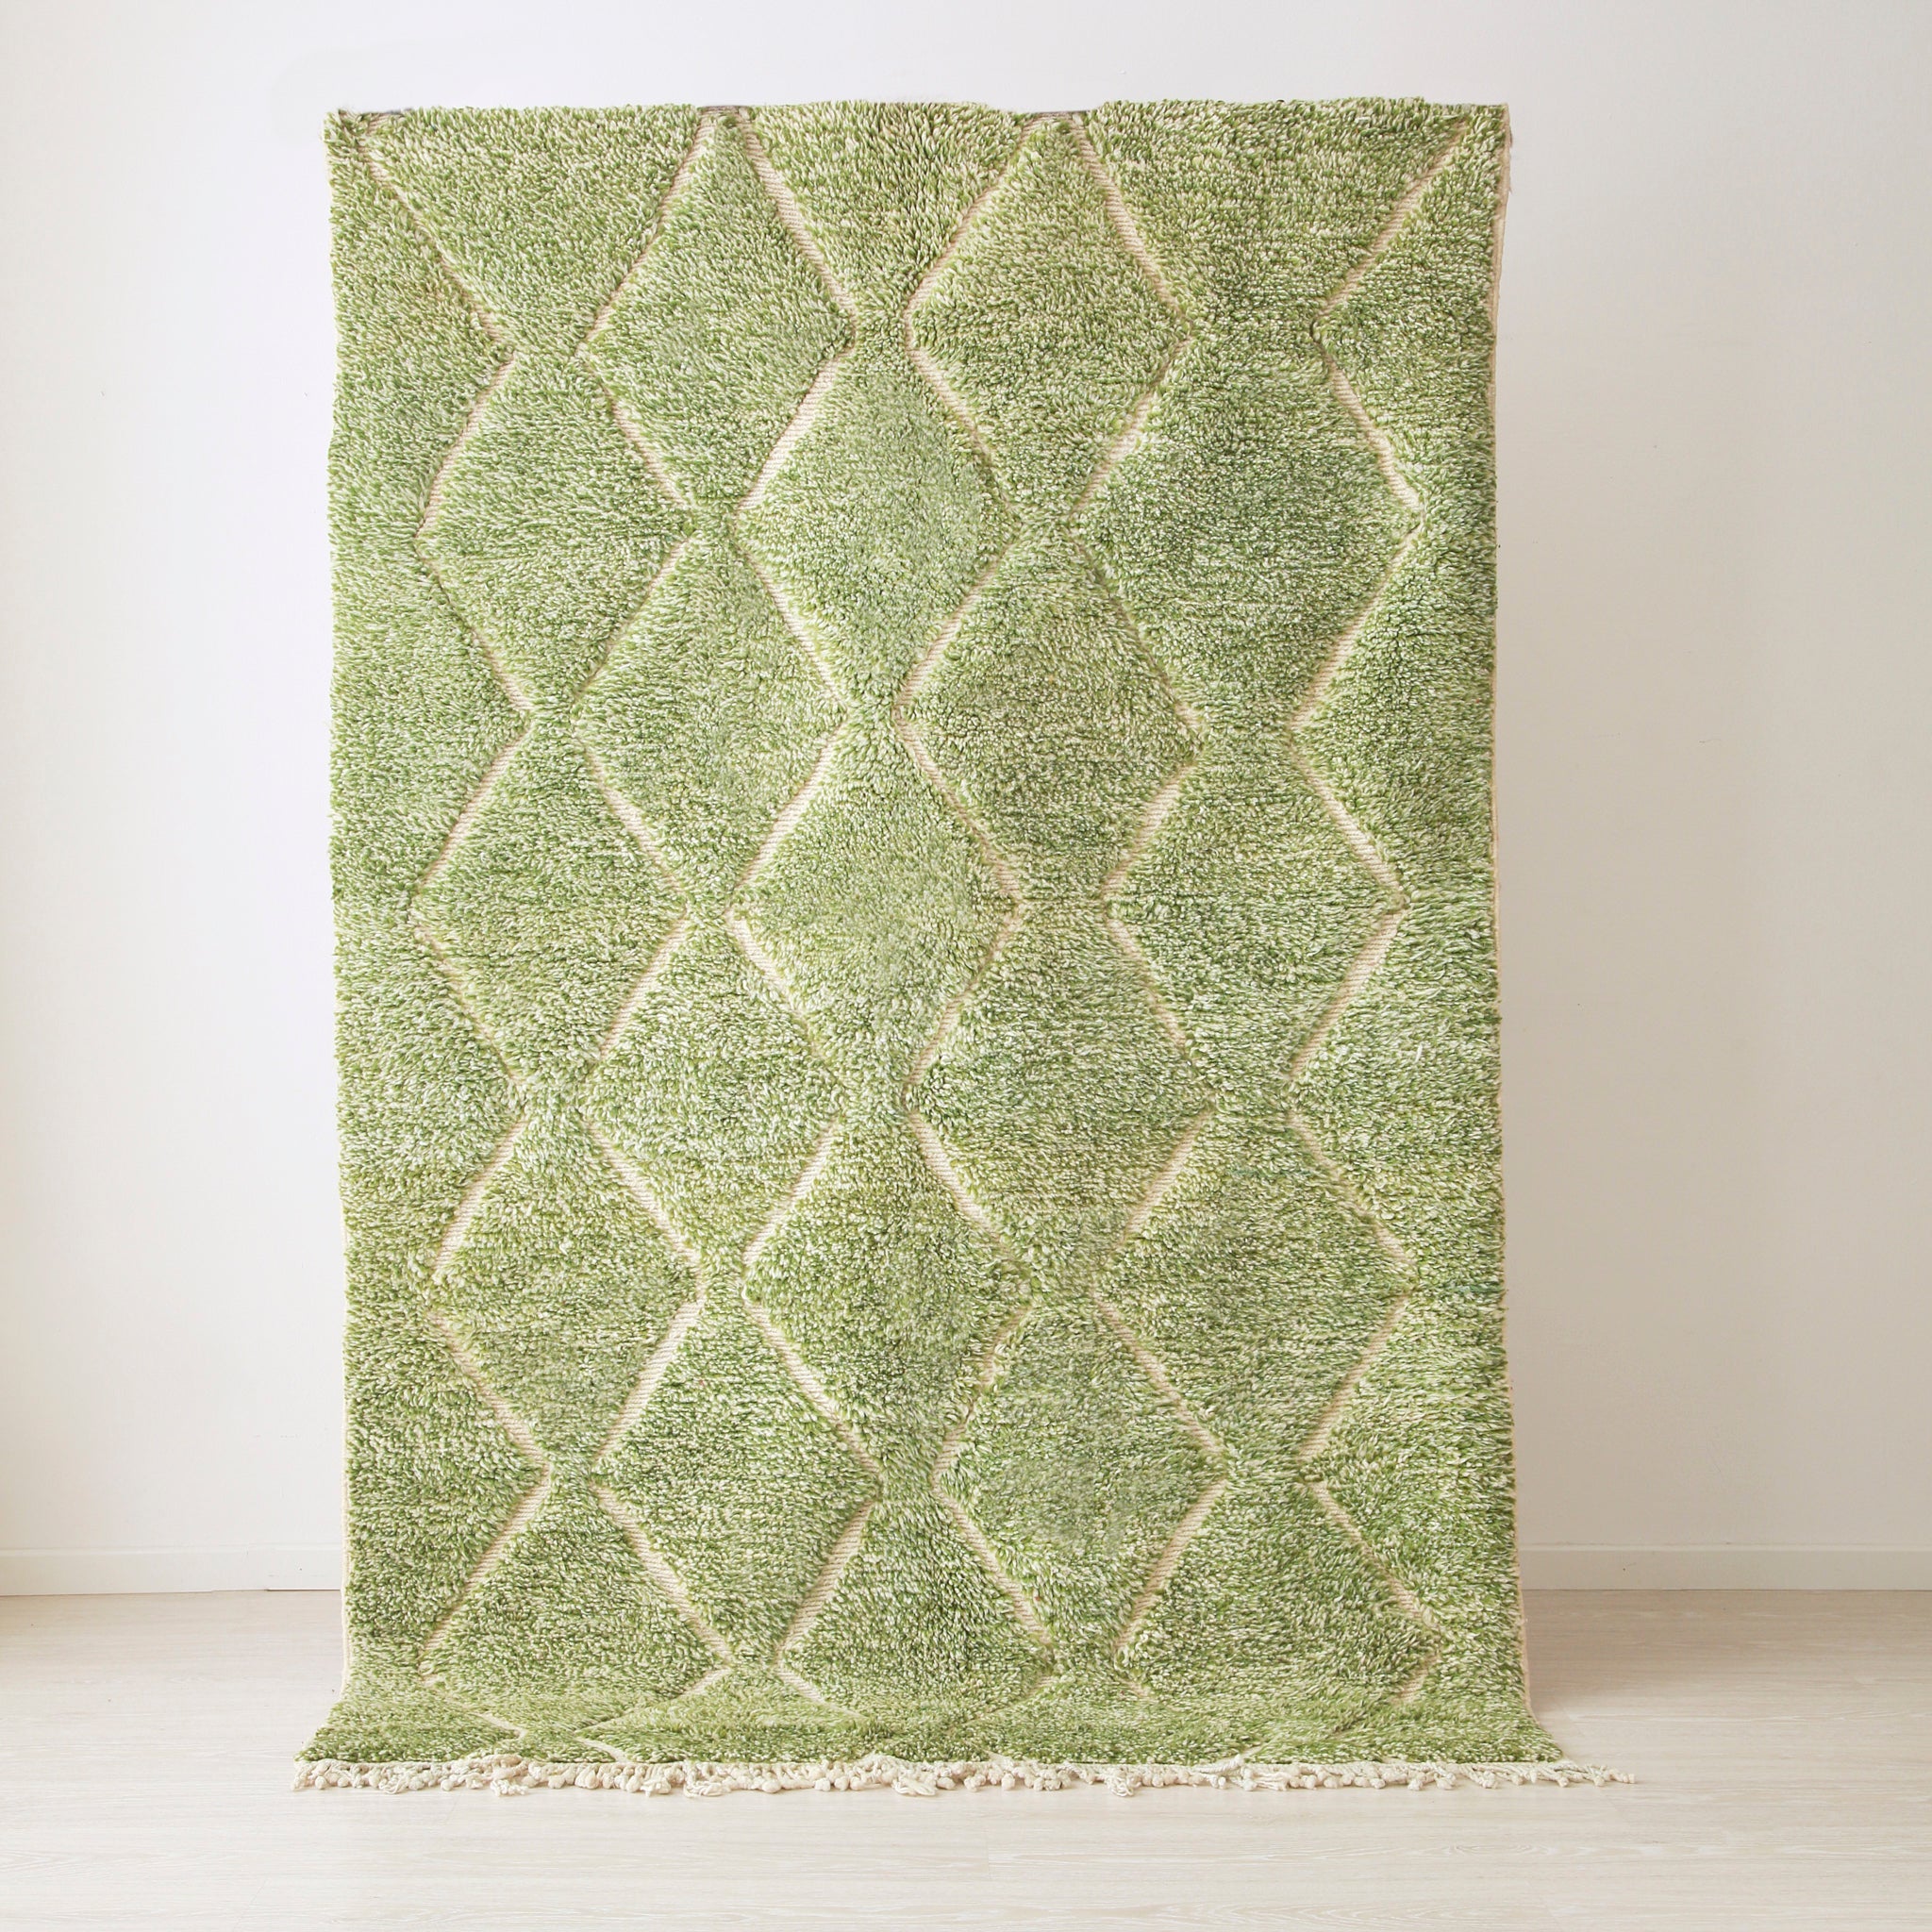 tappeto beni mrirt in lana tinta di verde con linee spezzate piu chiare che seguono la lunghezza del tappeto